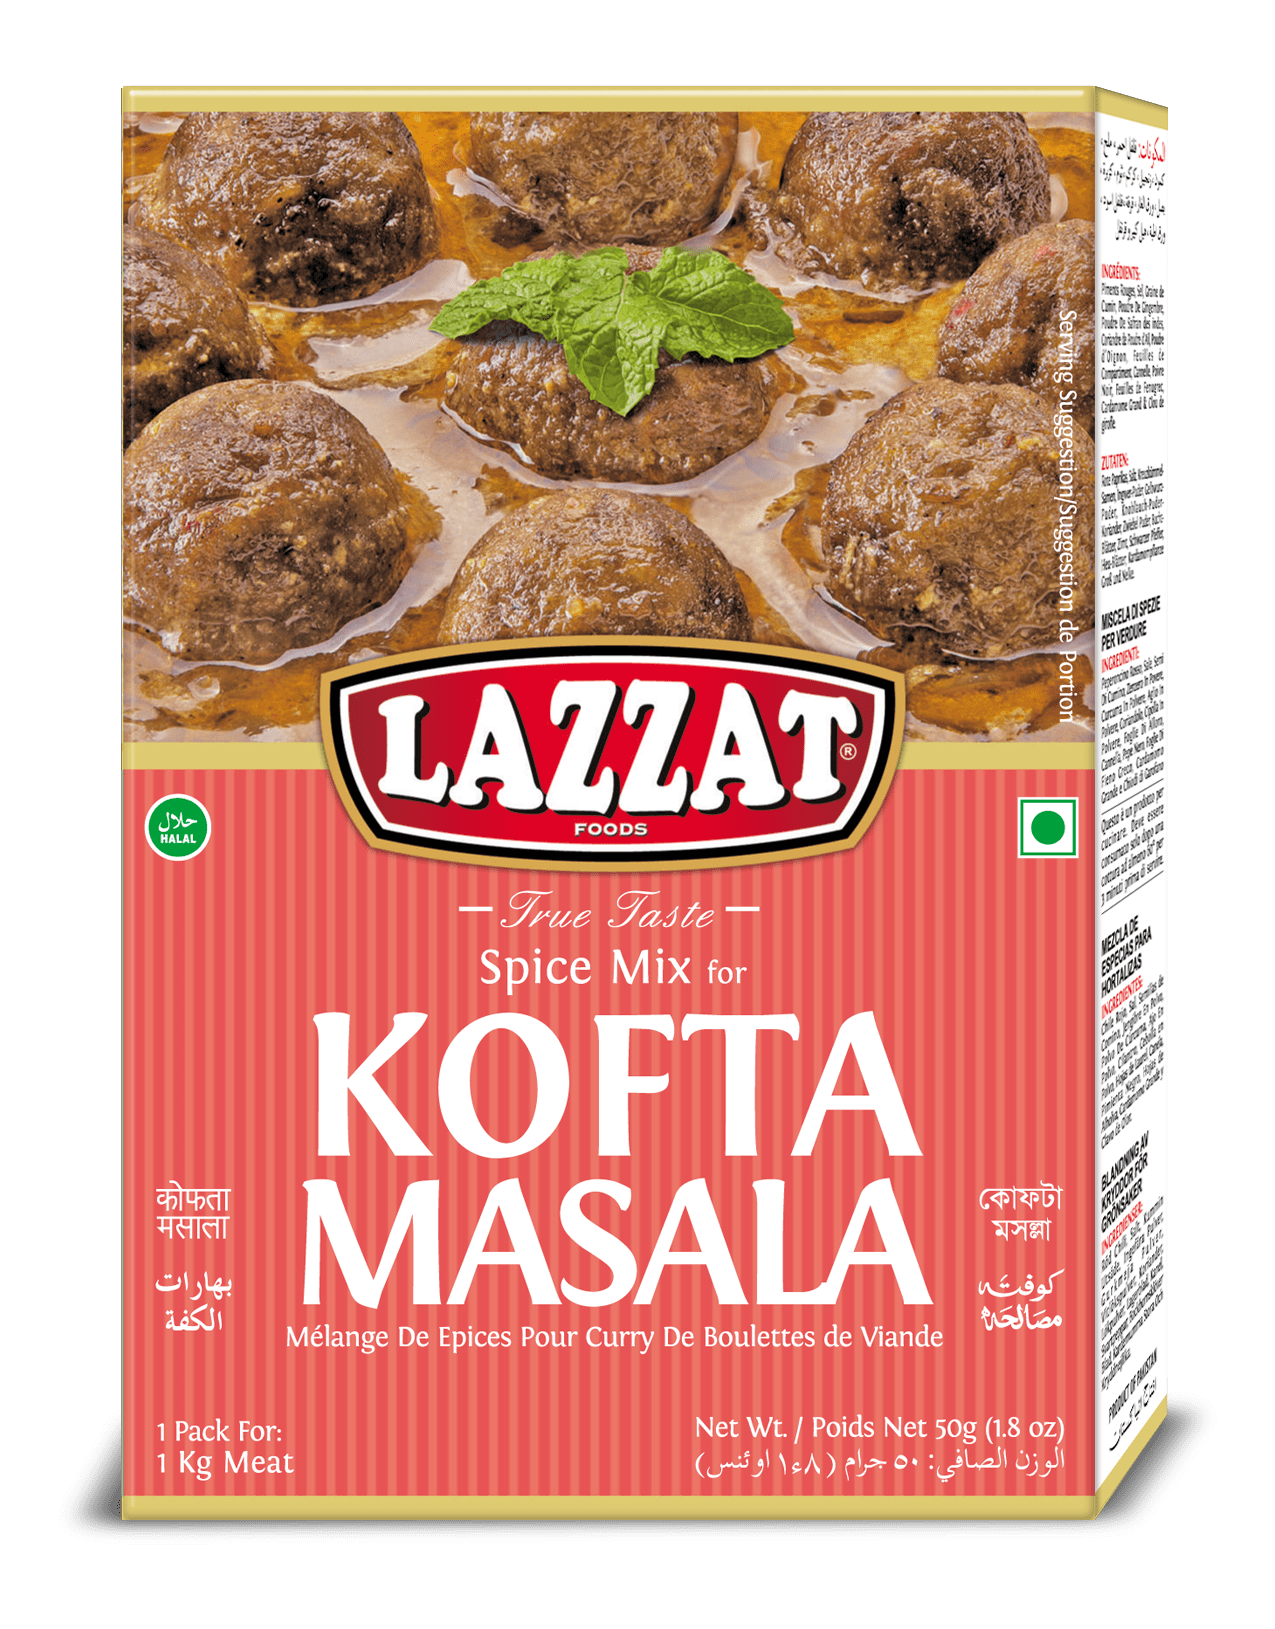 Kofta masala - LAZZAT FOODS - TRUE TASTE